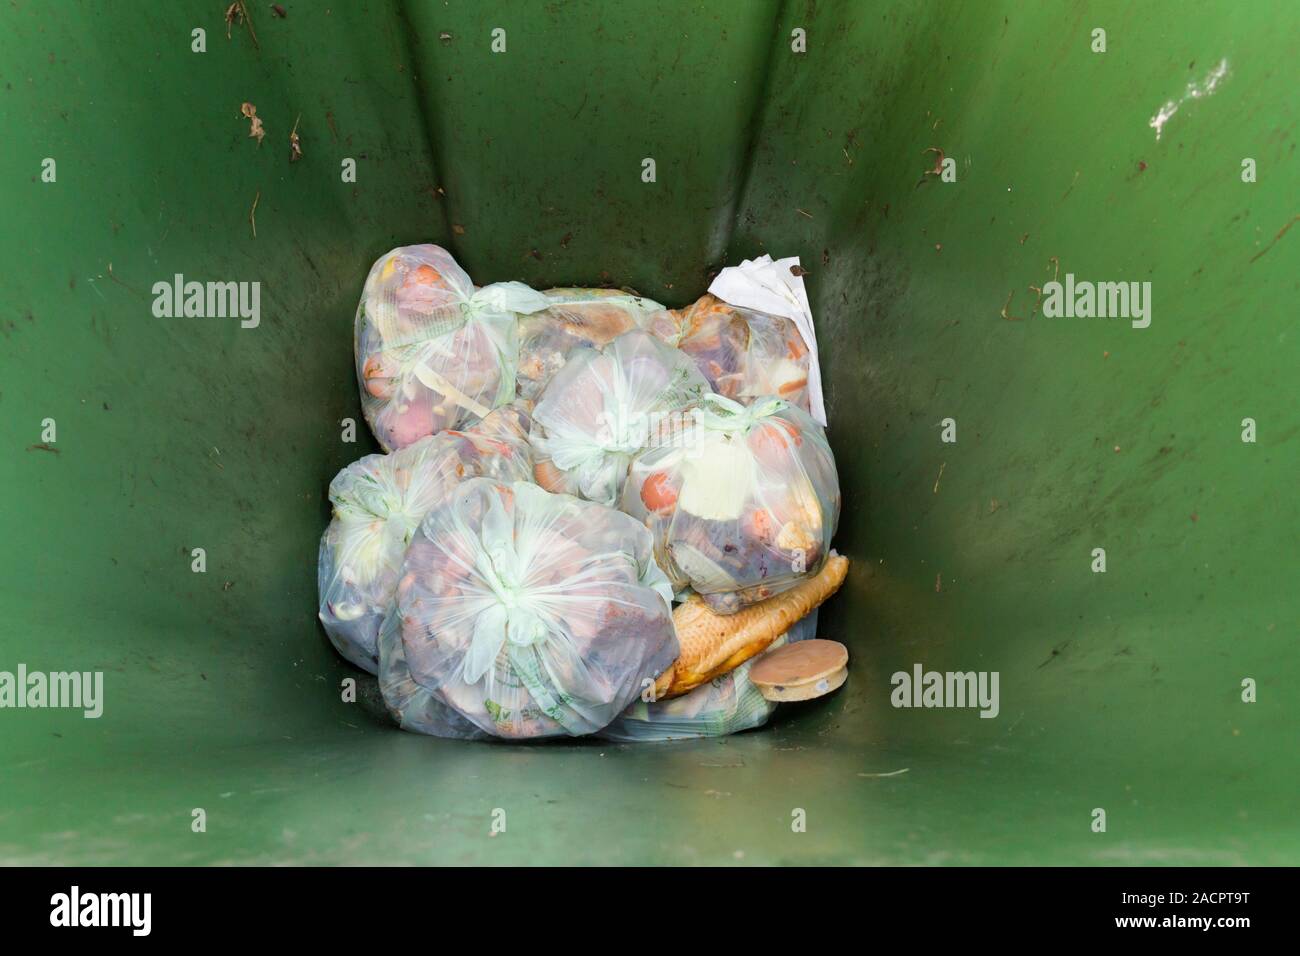 Riciclabili, compostabile rifiuti alimentari in compostabile sacchi collocati nella parte inferiore di un verde bidone con ruote per raccolta rifiuti. Foto Stock